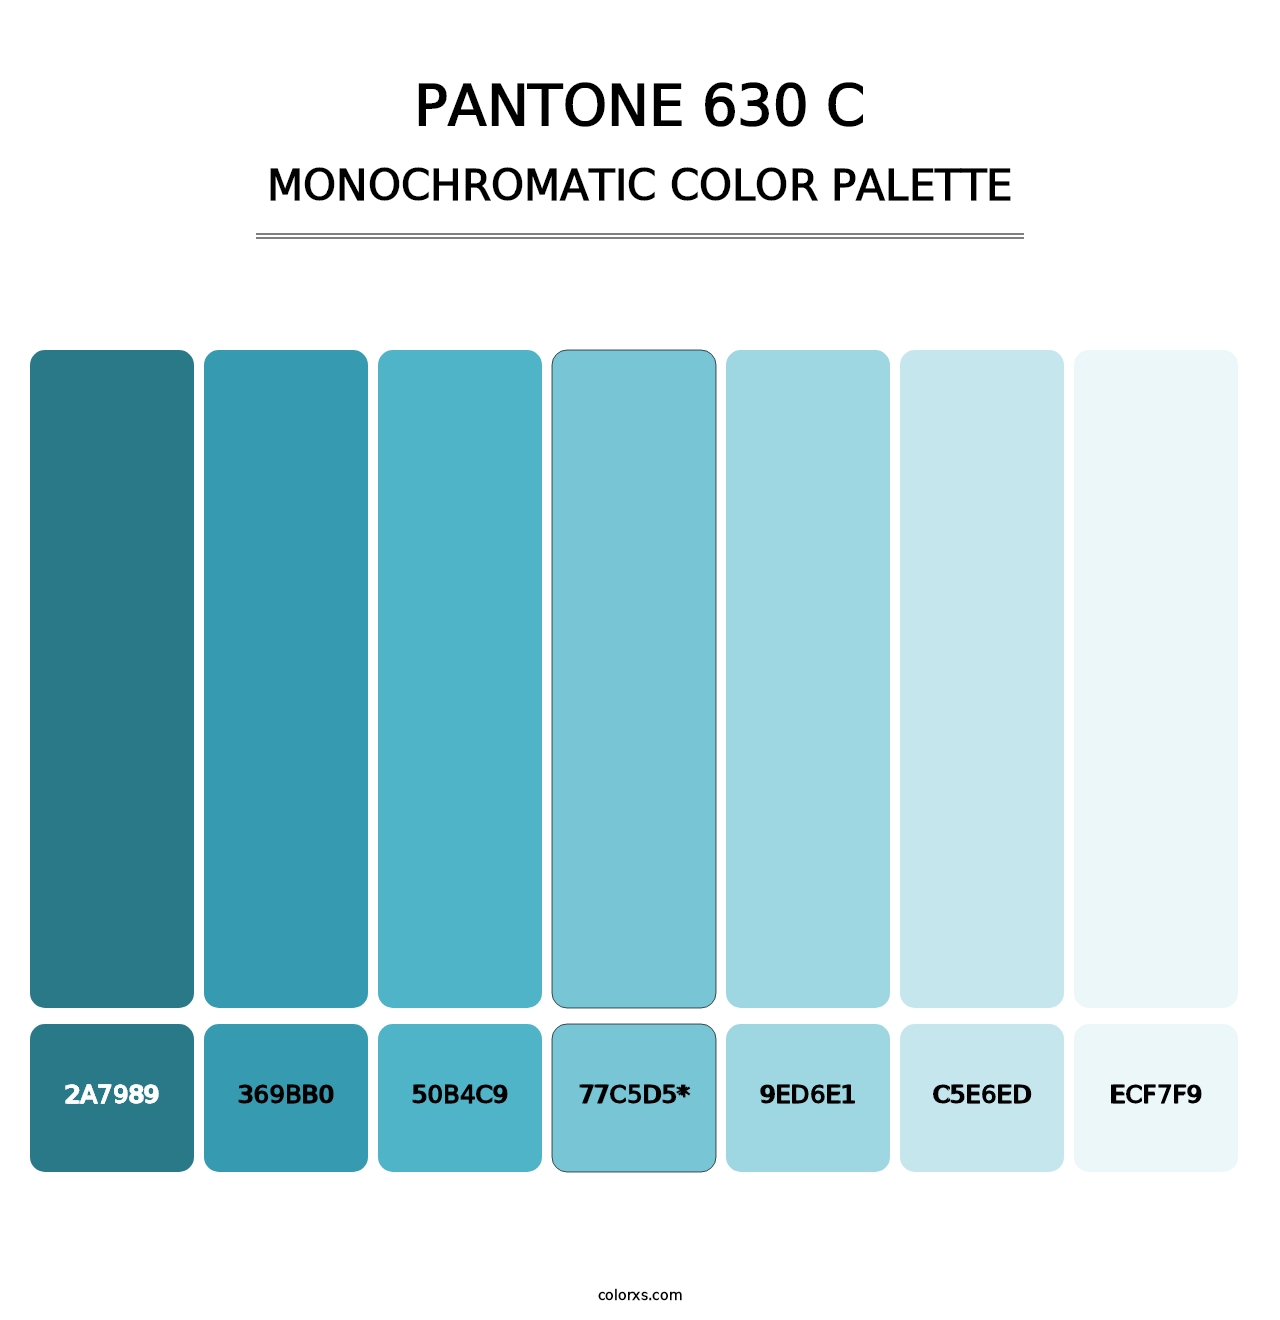 PANTONE 630 C - Monochromatic Color Palette